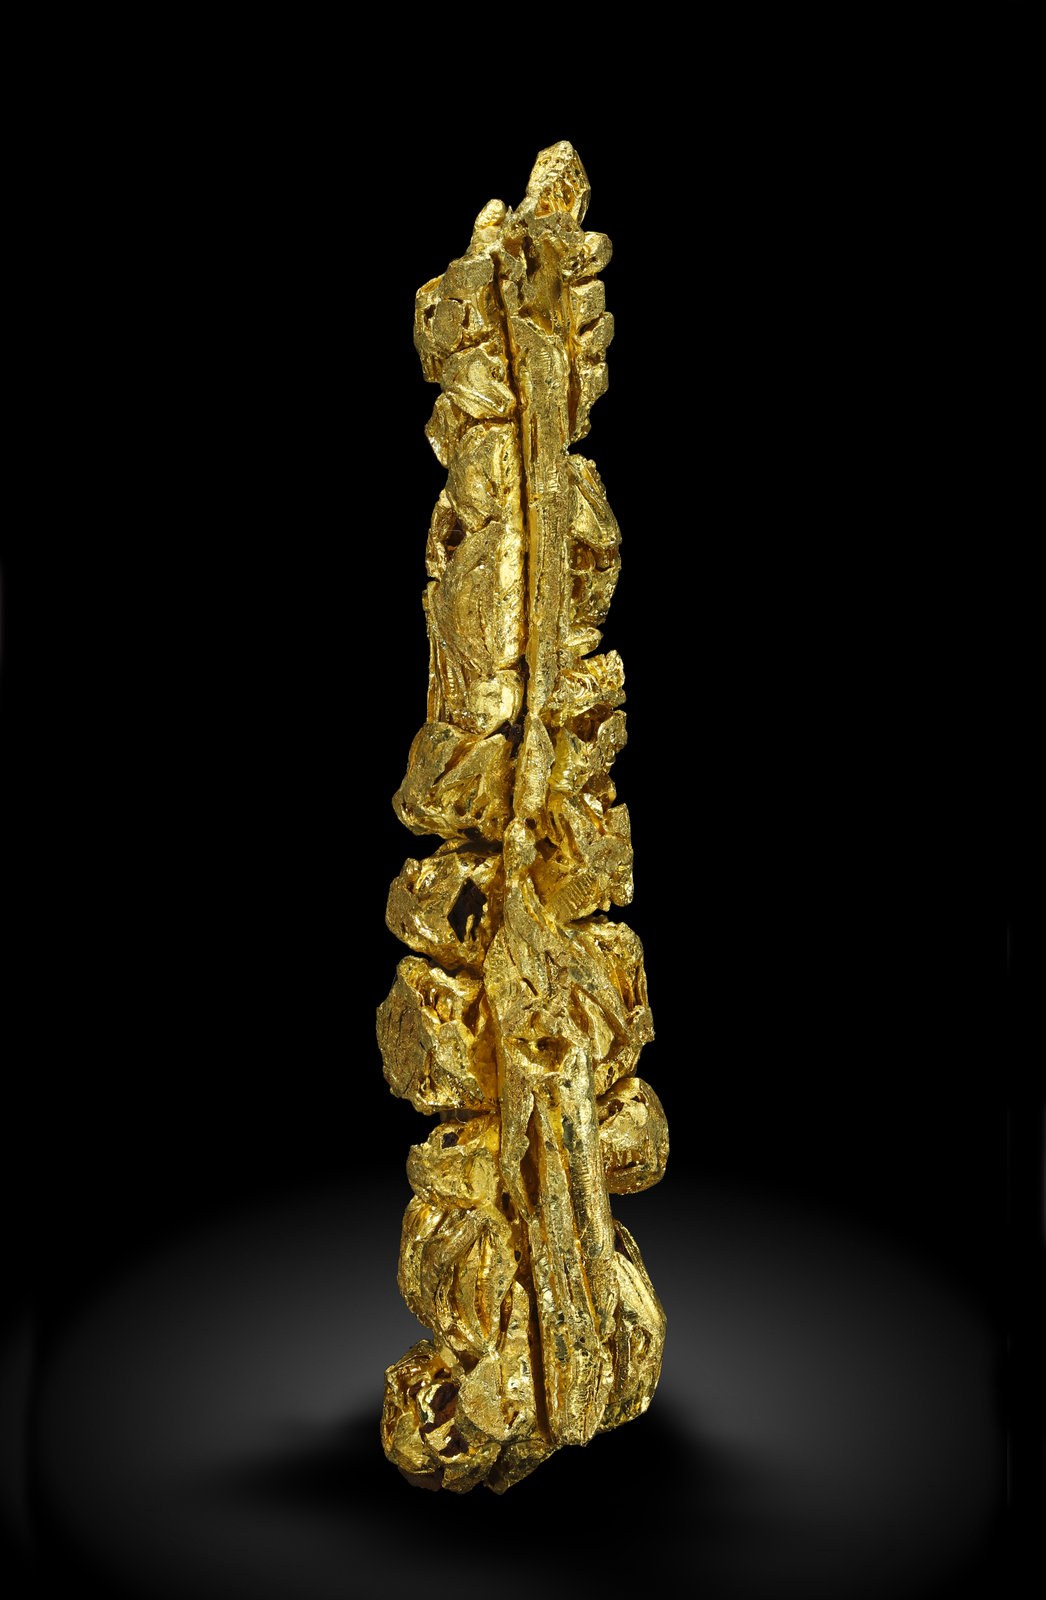 specimens/s_imagesAM5/Gold-MA52AM5_0030_r.jpg